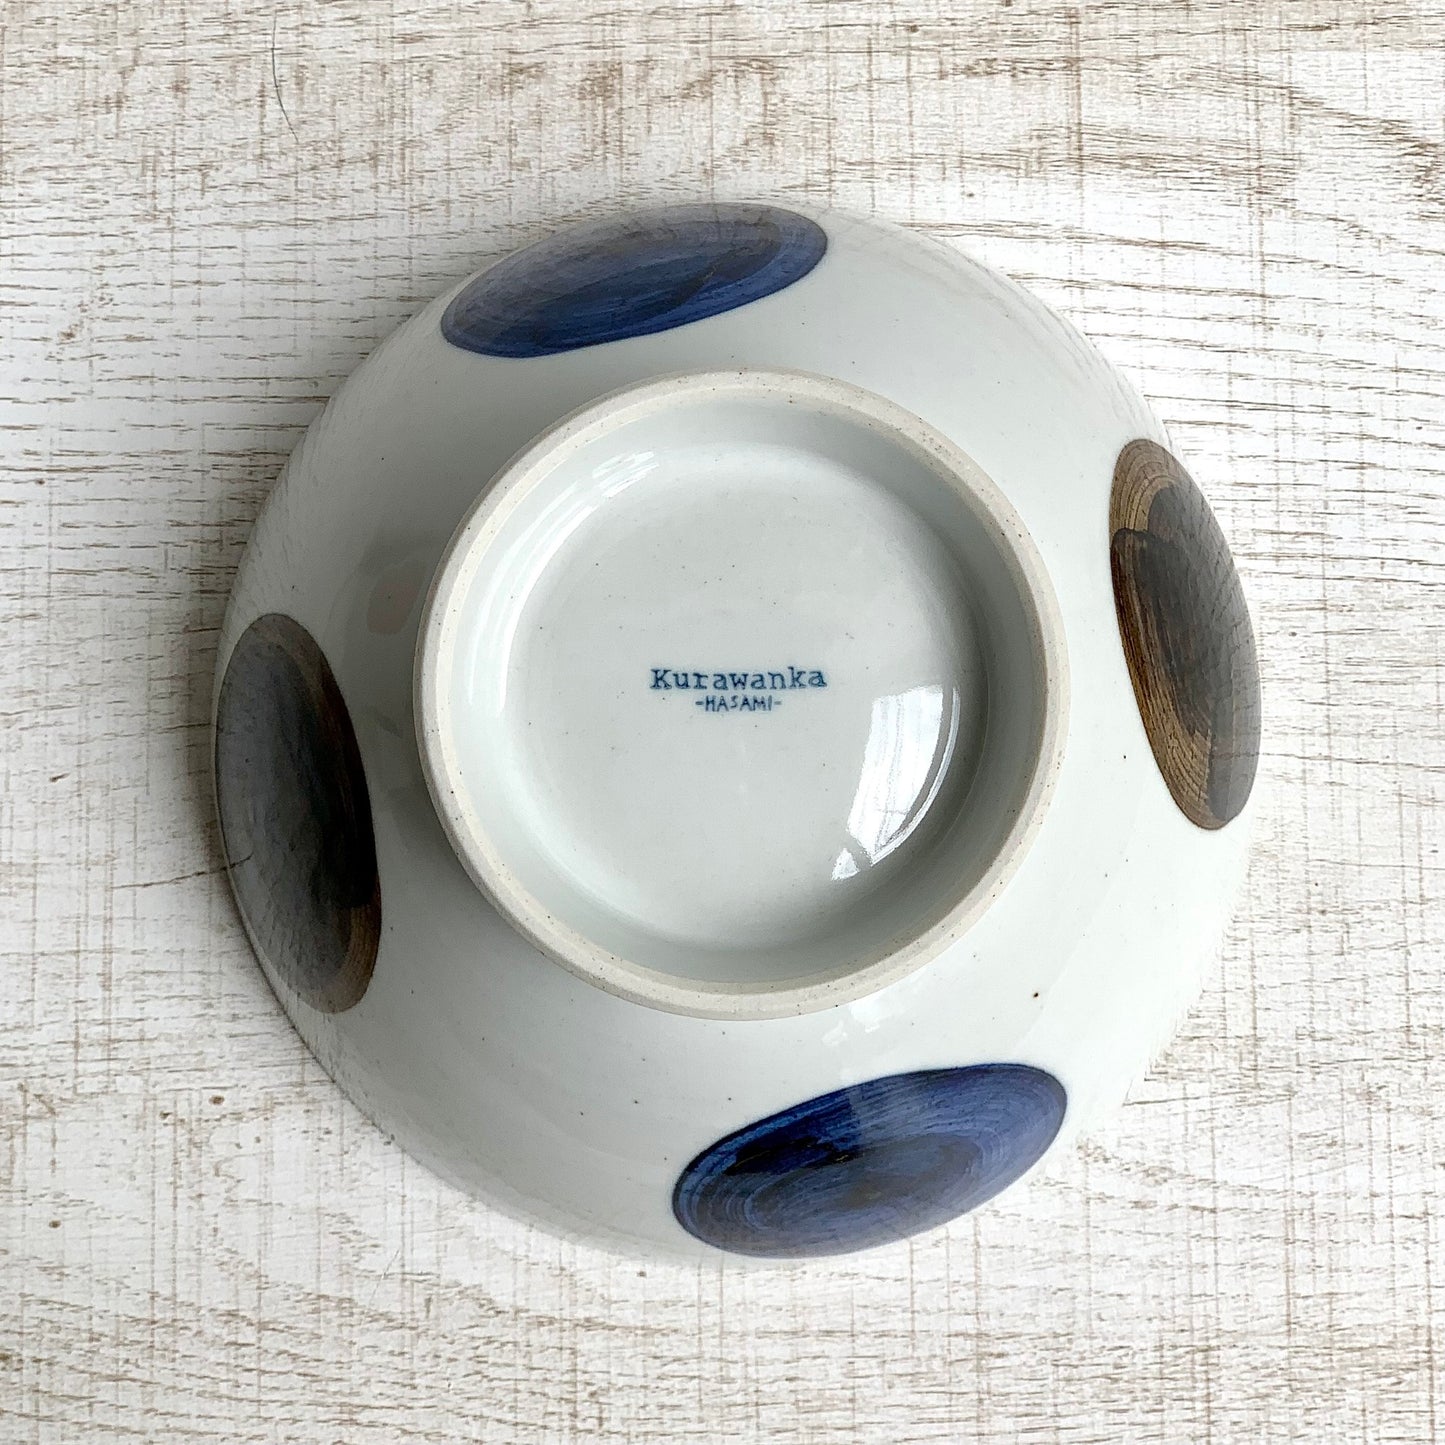 [波佐见烧] [瓦山窑] [Wamaru 纹章碗] [蓝色] [广东碗] 盖饭拉面碗日式乌冬面